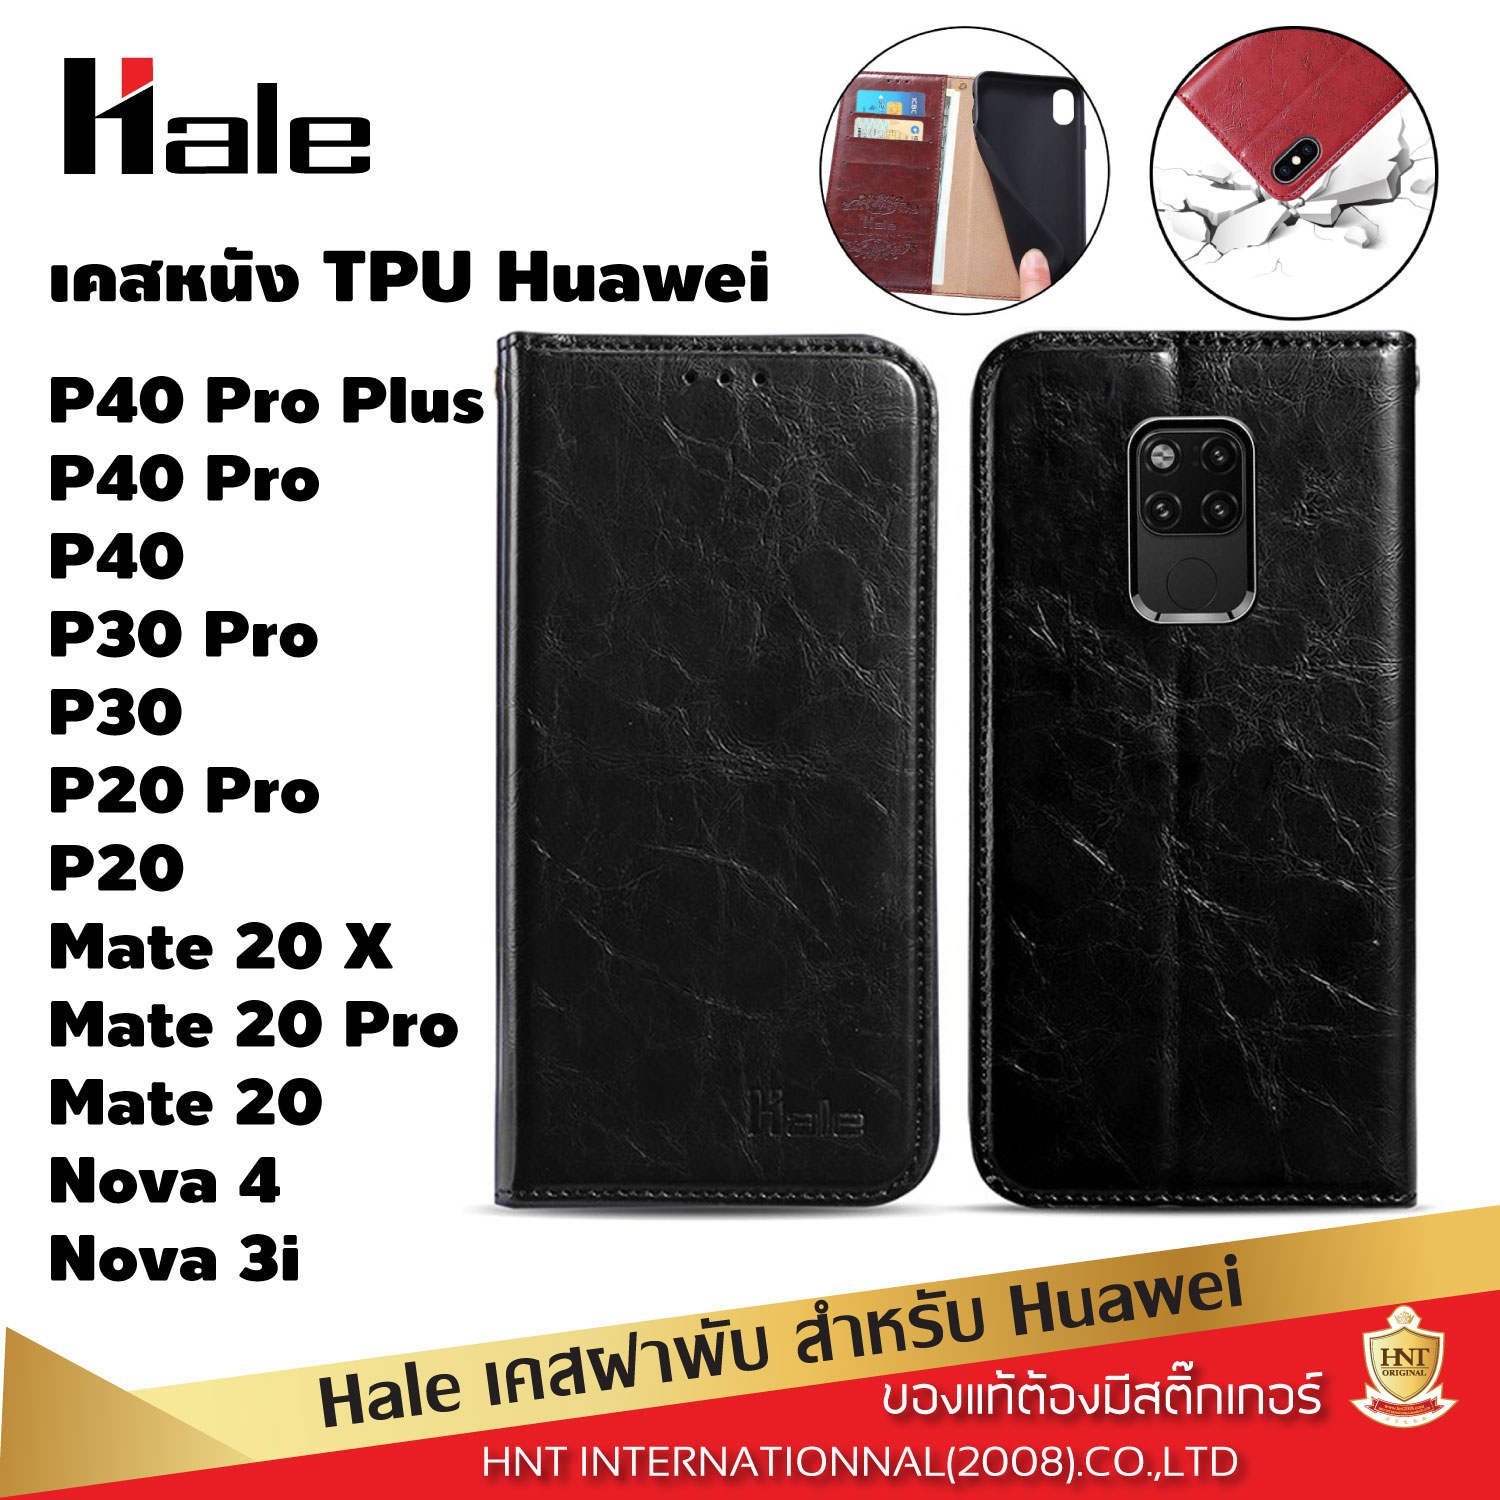 เคสฝาพับ Hale สำหรับ Huawei P40 Pro Plus, P40 Pro, P40, P30 Pro, P30, P20 pro, P20, Mate 20 X, Mate 20 pro, Mate 20, Nova 4, Nova 3i ใส่นามบัตรได้ กันกระแทก เคสหนัง เคสกันกระแทก เคส Case เคสโทรศัพท์ เคสมือถือ